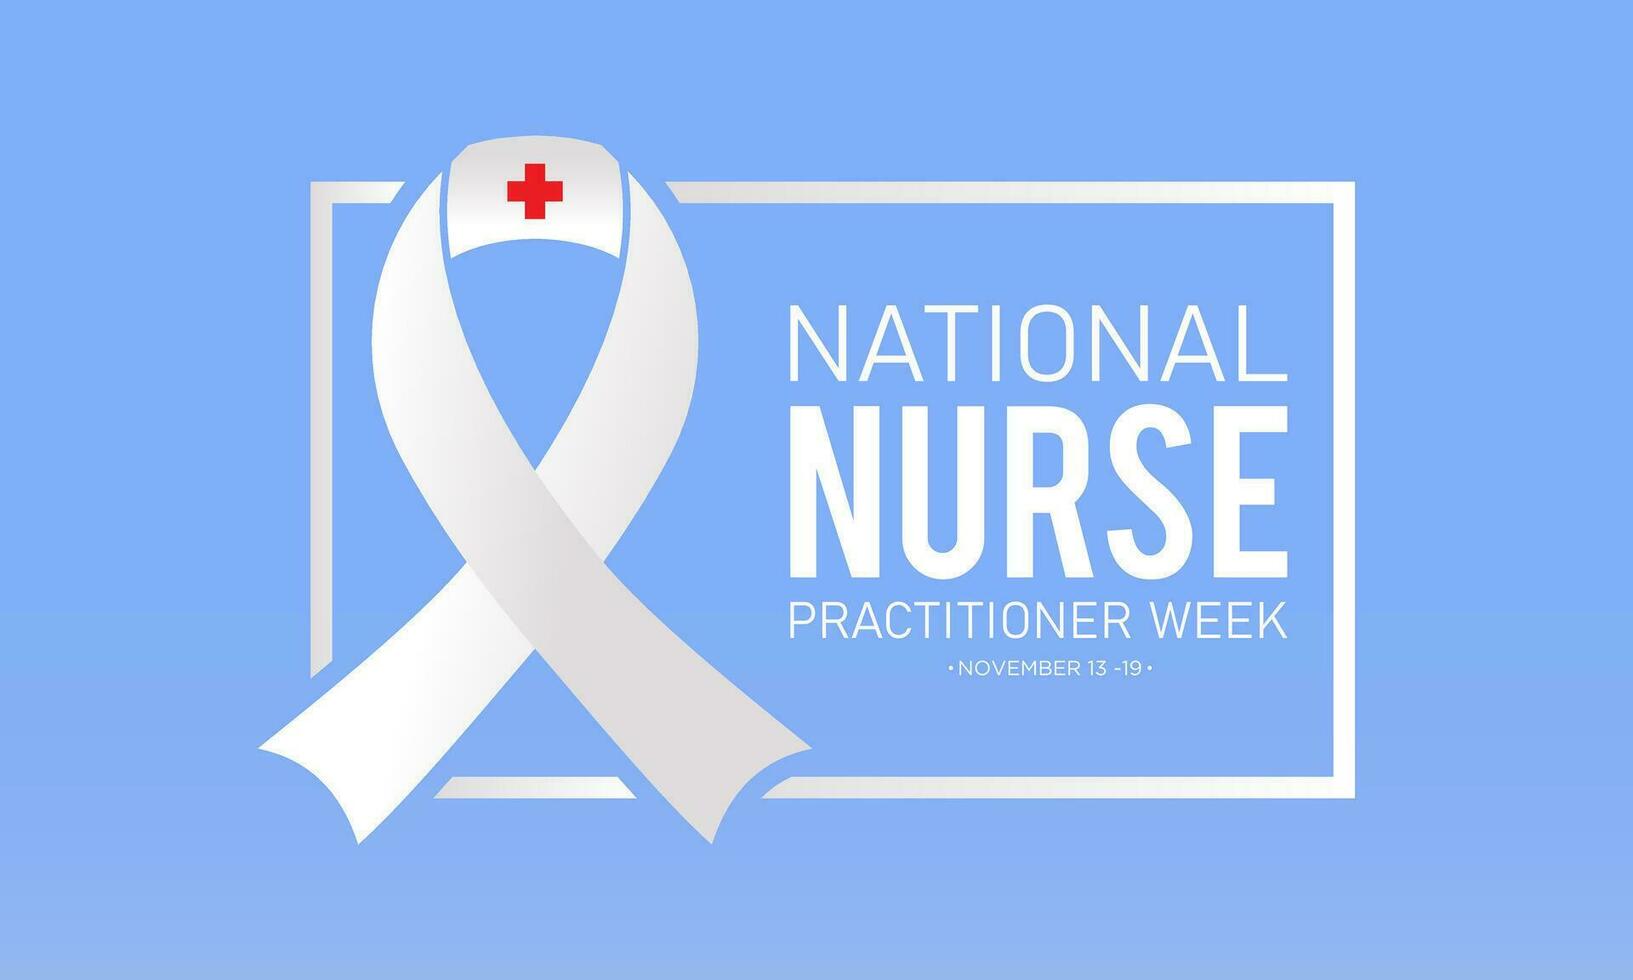 vector ilustración en el tema de nacional enfermero facultativo semana observado cada año en durante noviembre 13 a 19 vector modelo para bandera, saludo tarjeta, póster con antecedentes.